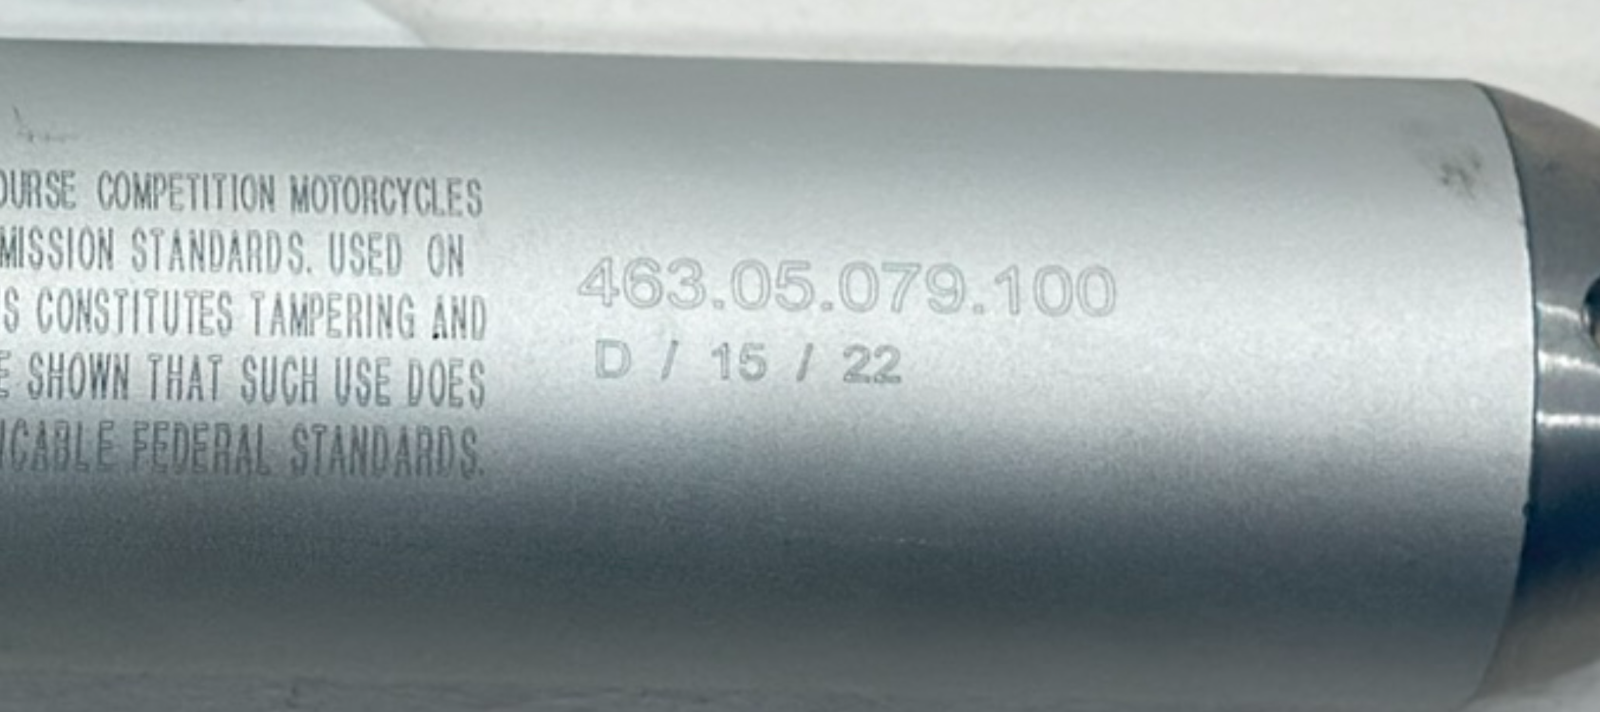 New 2023 Husqvarna TC65 Exhaust Muffler Silencer Pipe Slip On OEM 46305079100